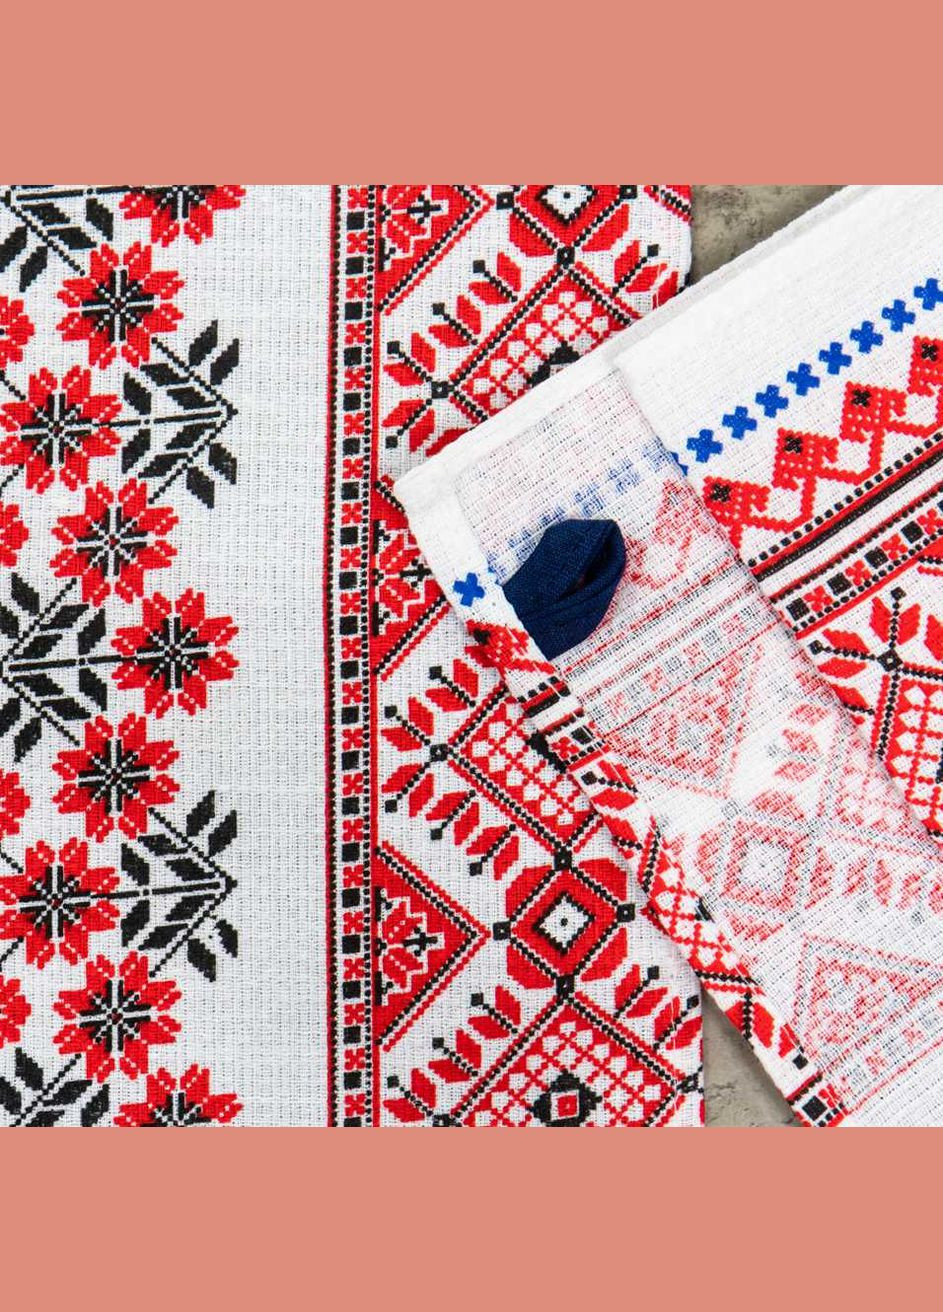 GM Textile полотенце вафельное с принтом вышивки 35х61см 180г/м2 (белокрасный) комбинированный производство - Узбекистан